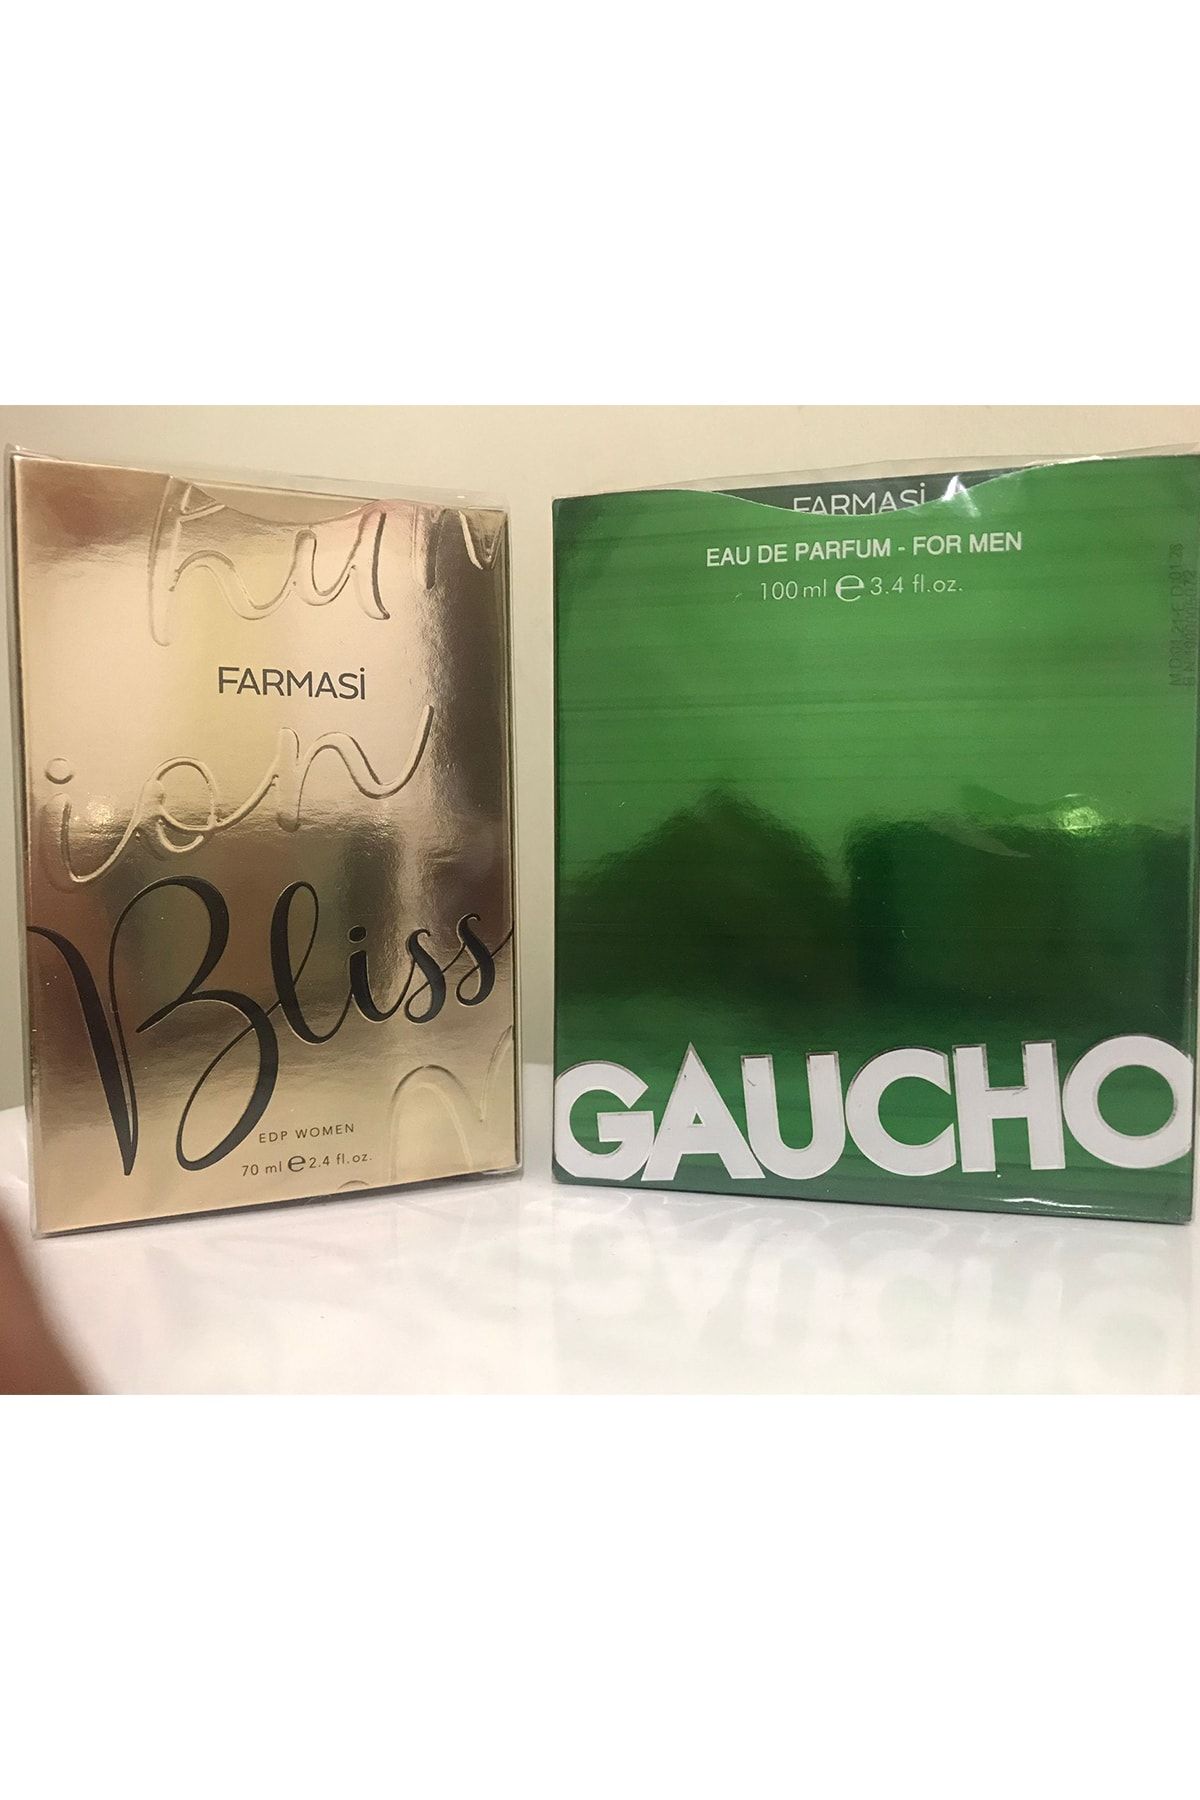 Farmasi Kadın Bliss Parfüm ve Erkek Gaucho Parfüm Seti 1